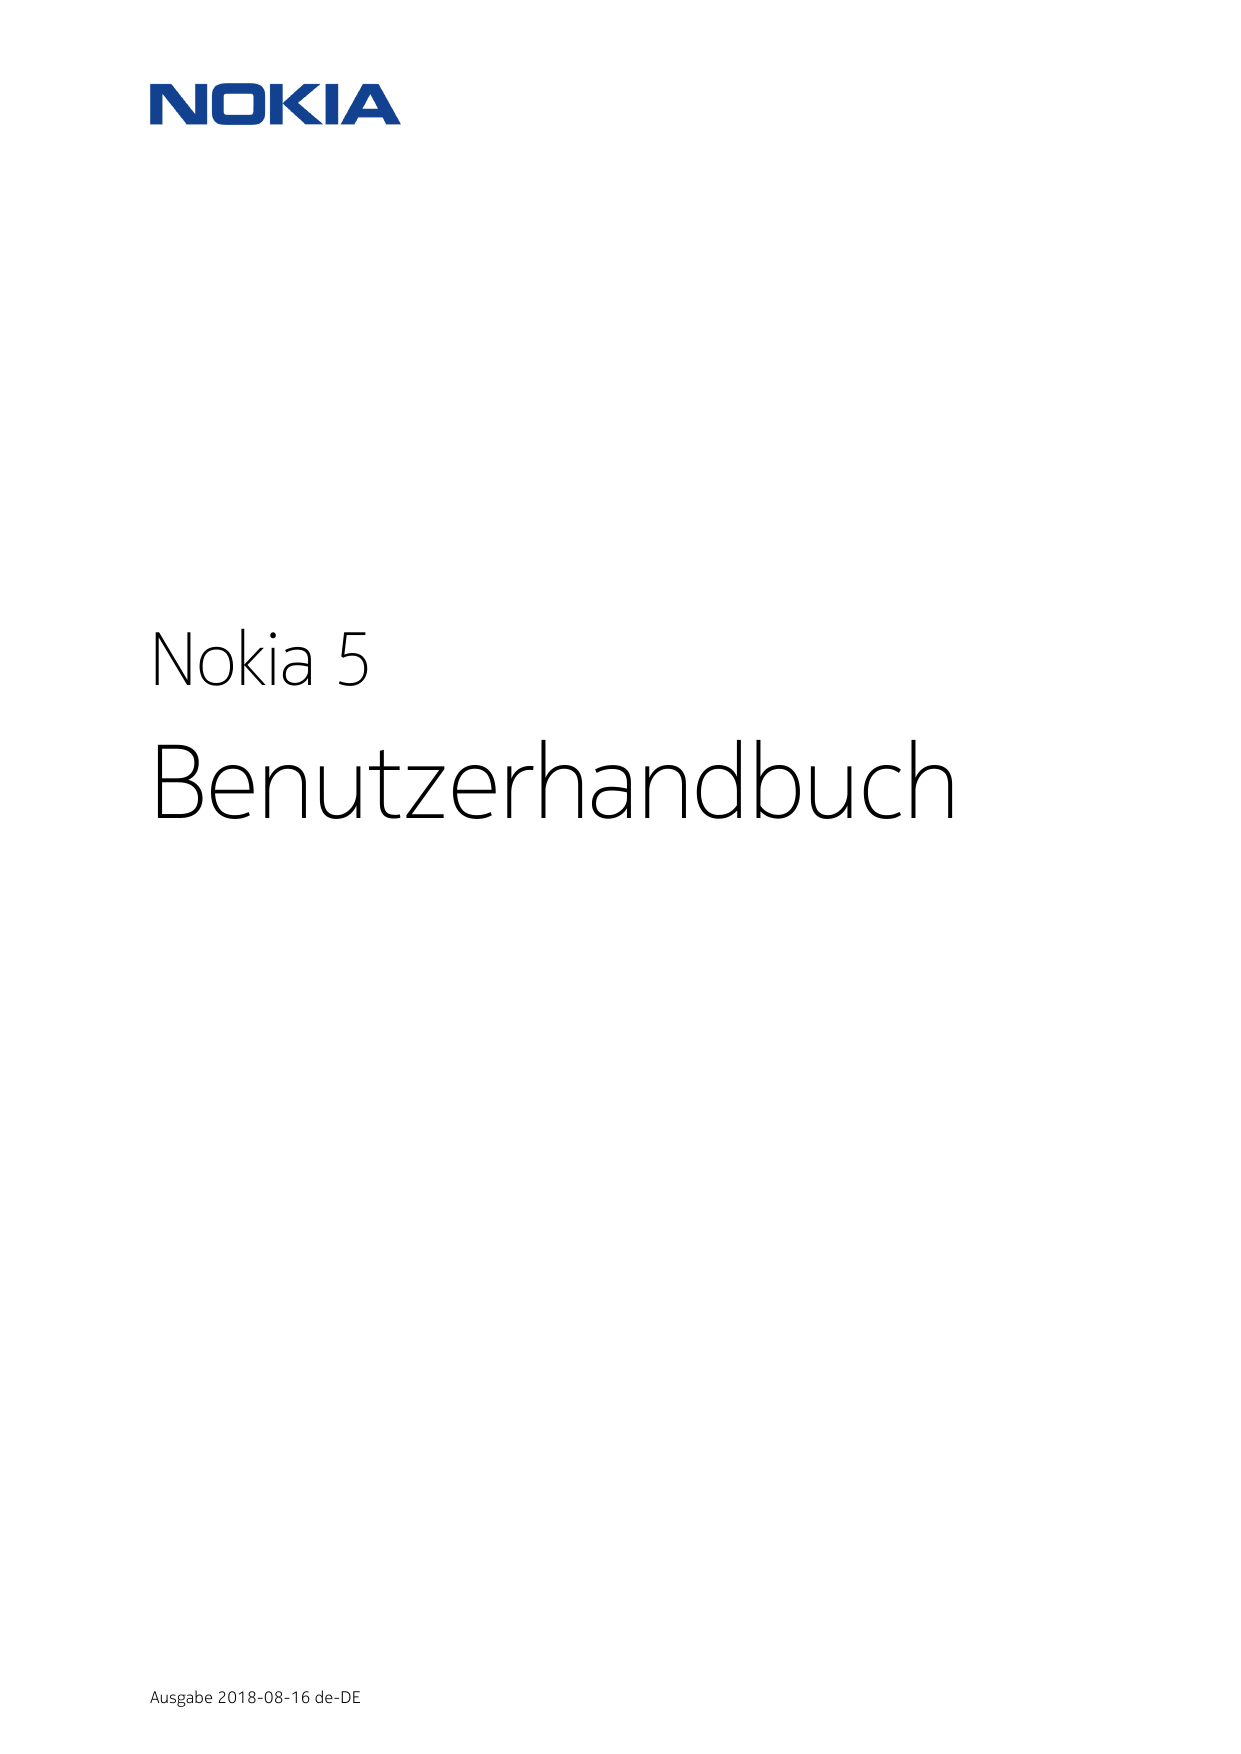 Nokia 5BenutzerhandbuchAusgabe 2018-08-16 de-DE